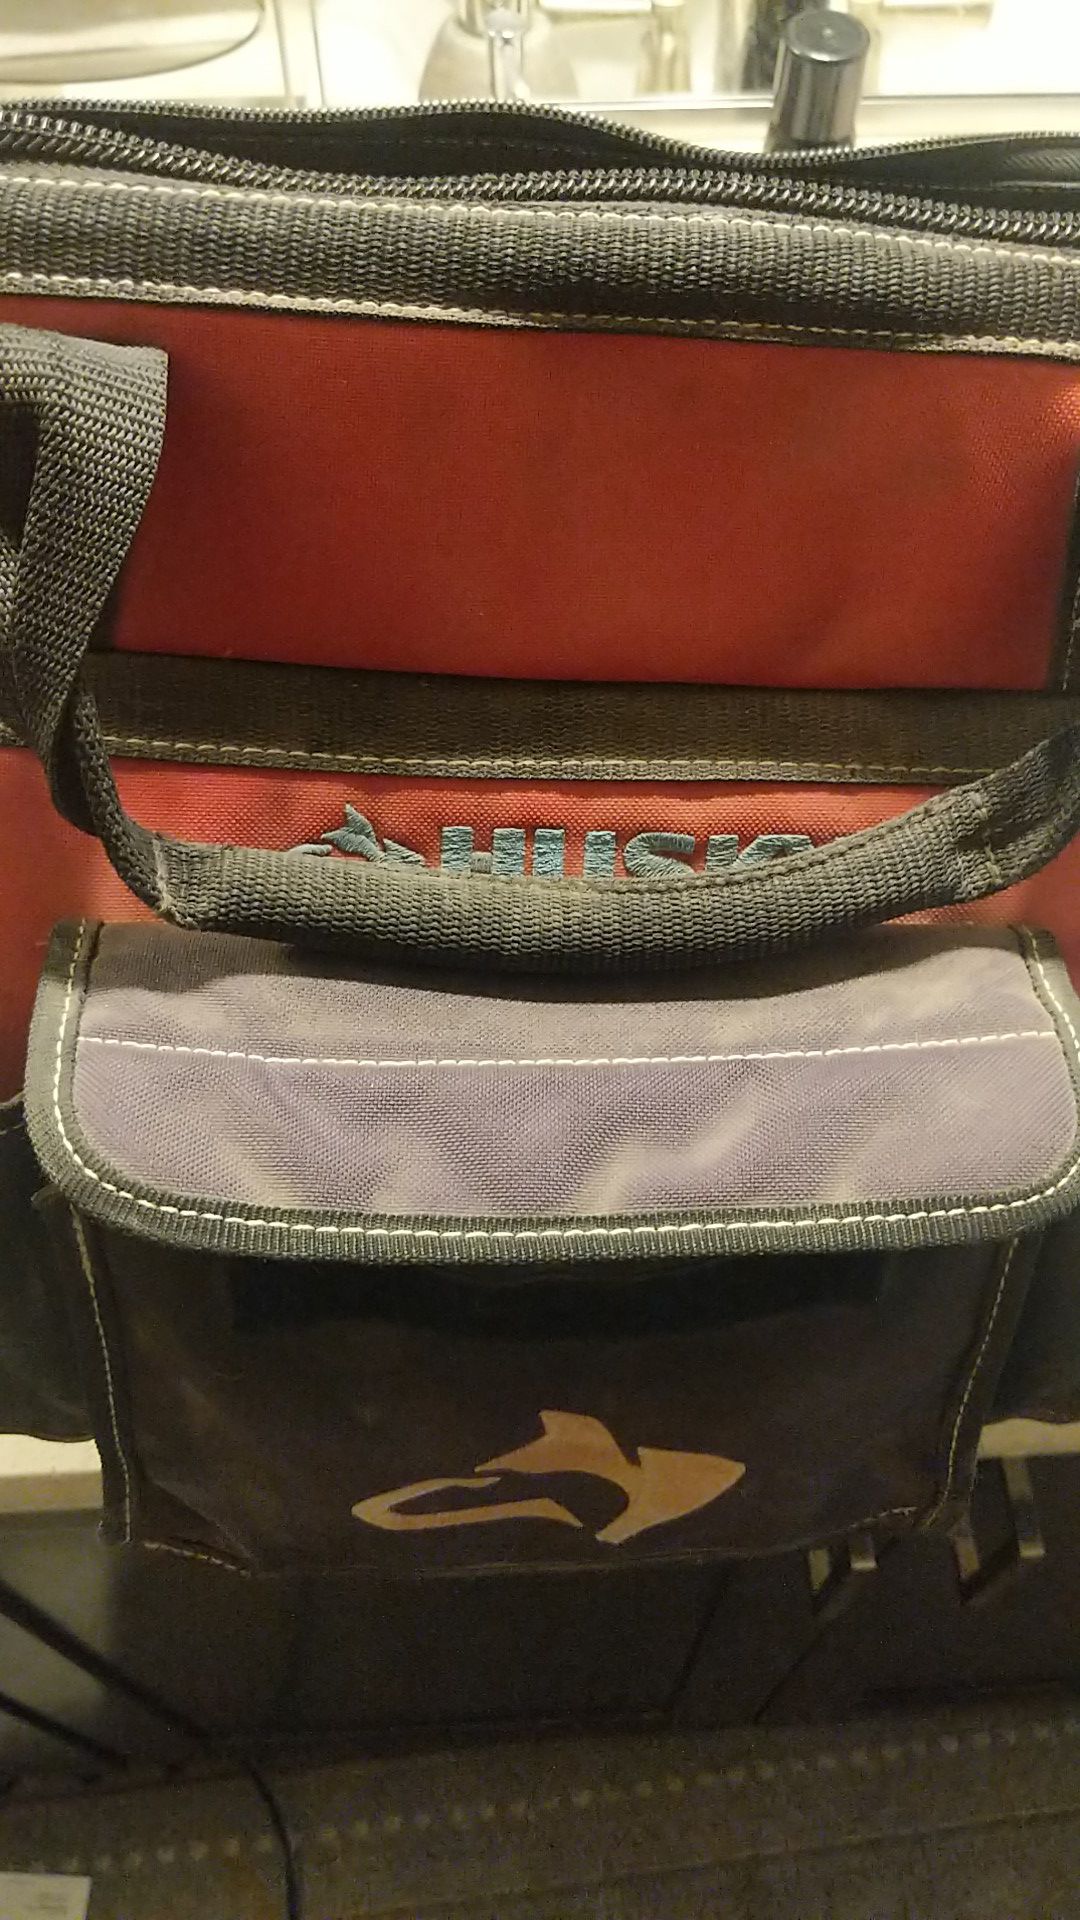 Husky tool bag